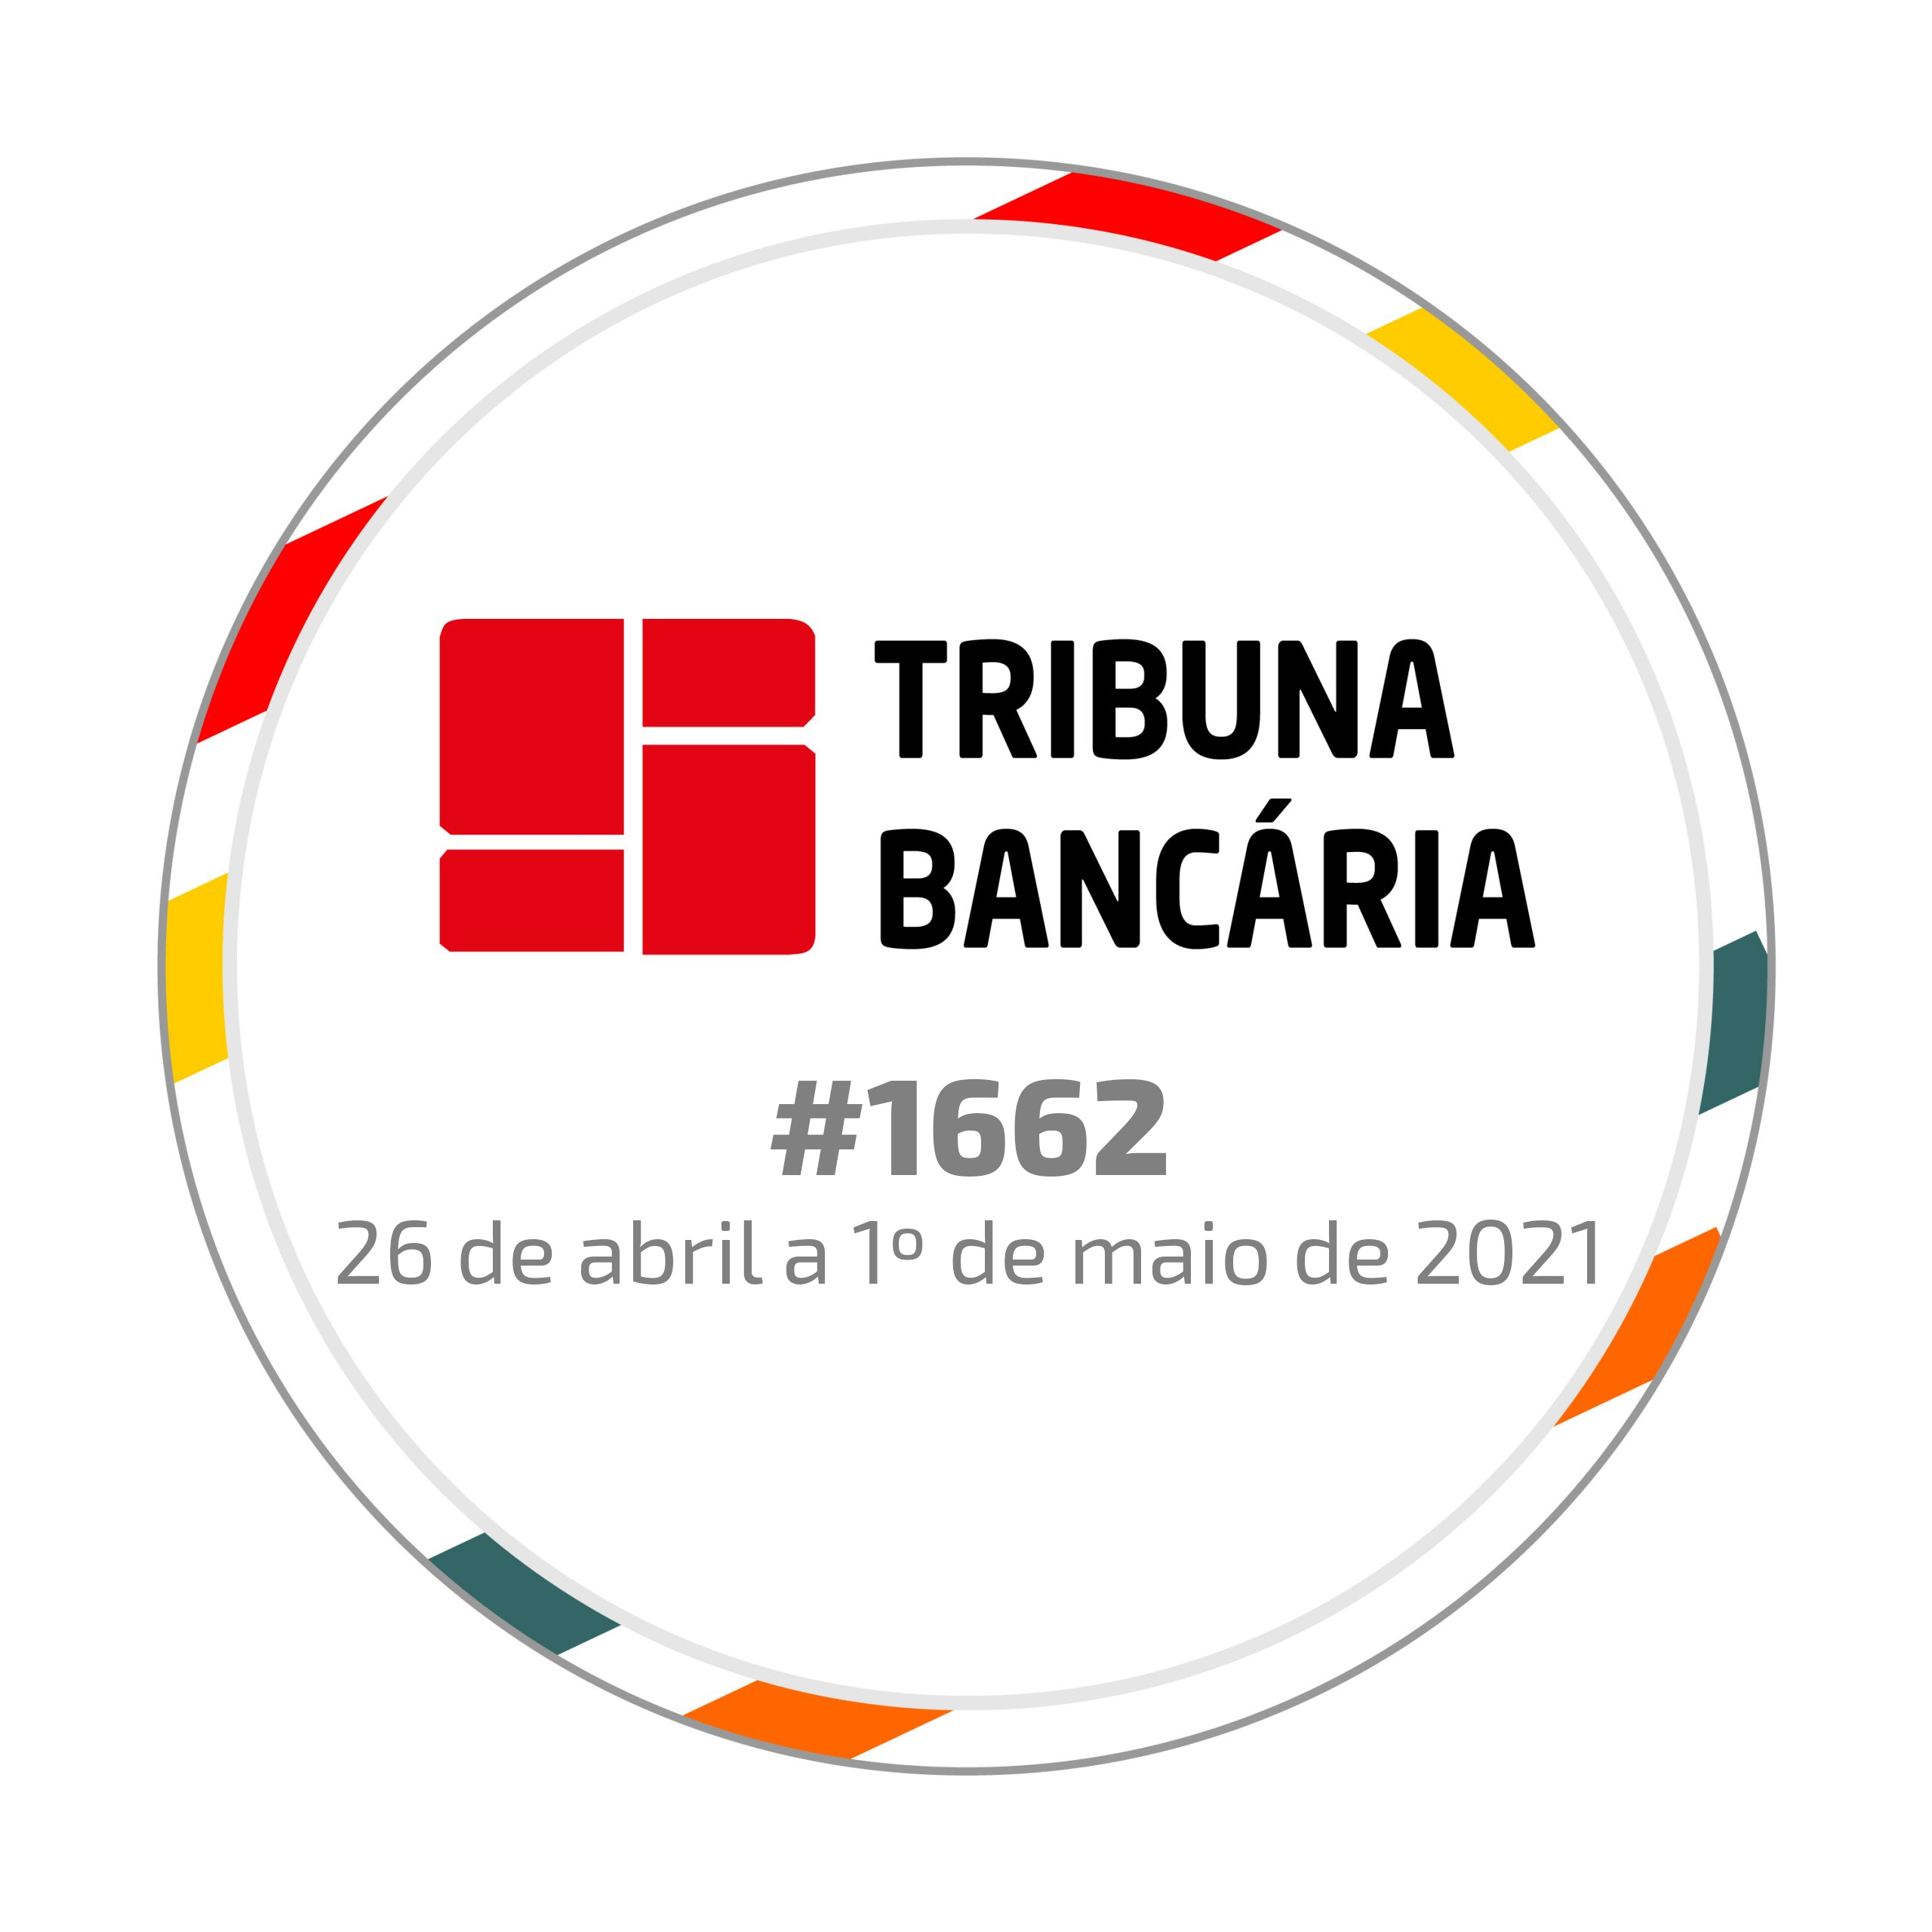 Tribuna Bancária #1662 | 26 de abril a 1º de maio de 2021